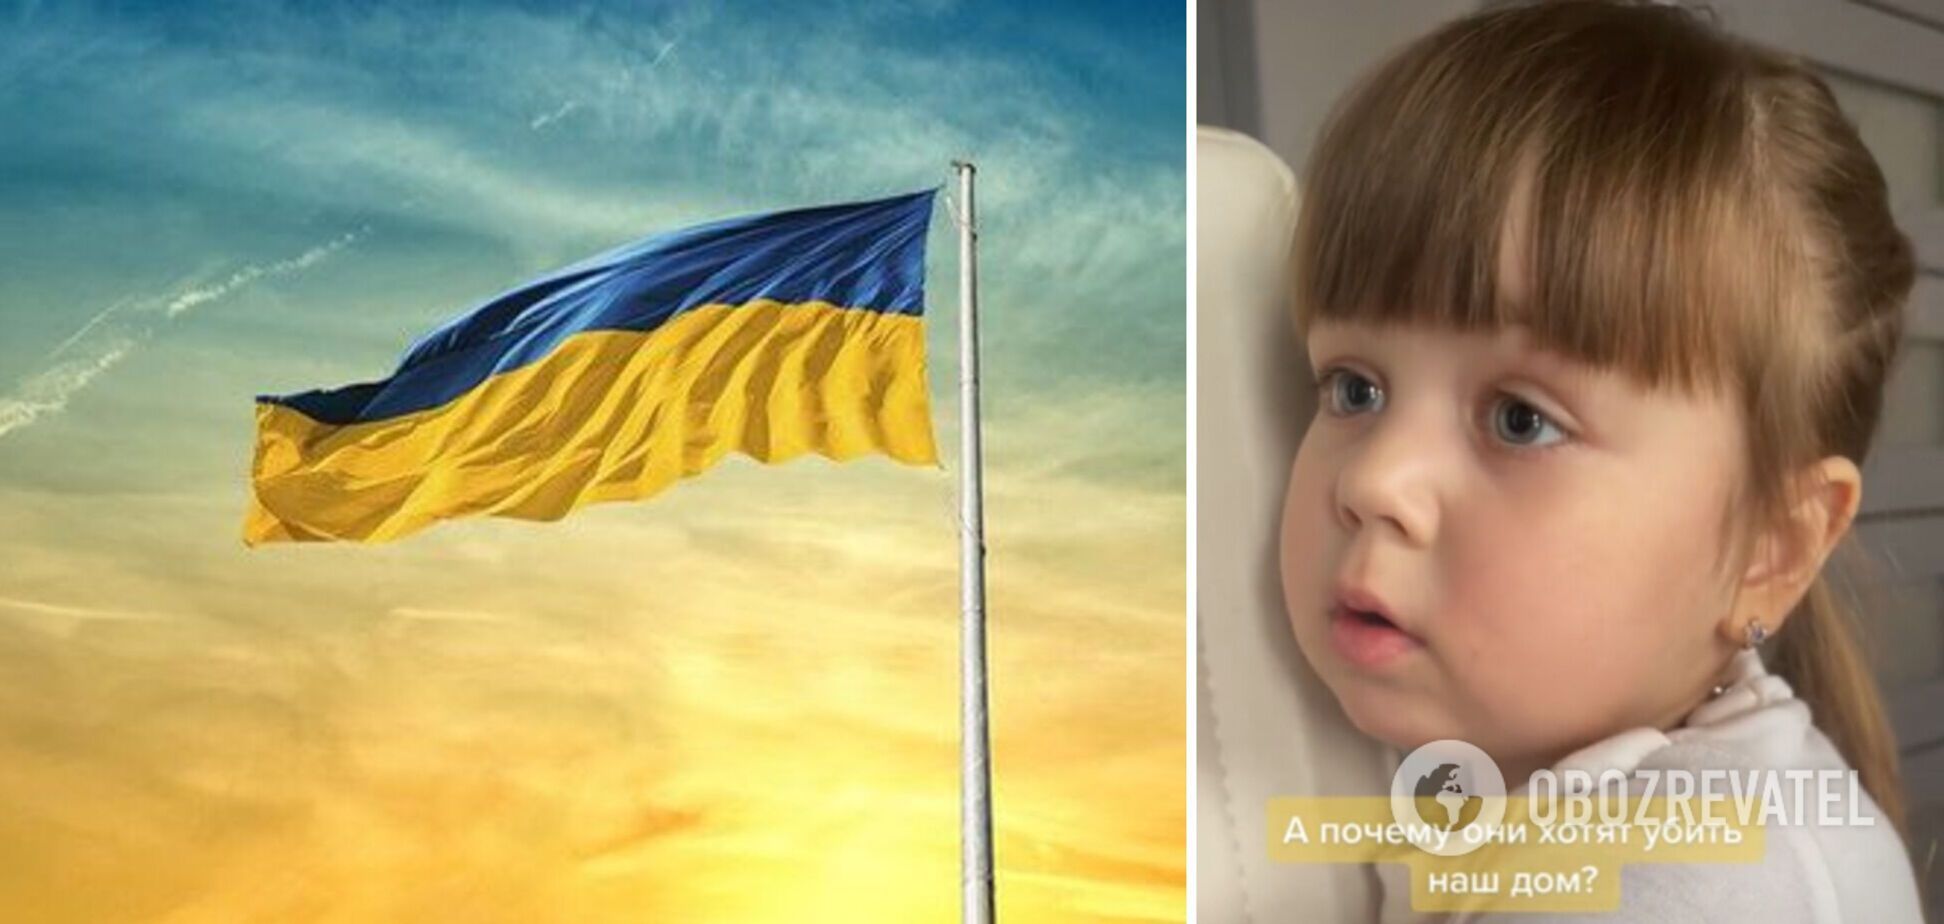 'Чому вони хочуть вбити наш дім?' Відео розмови маленької українки з мамою зворушило мережу